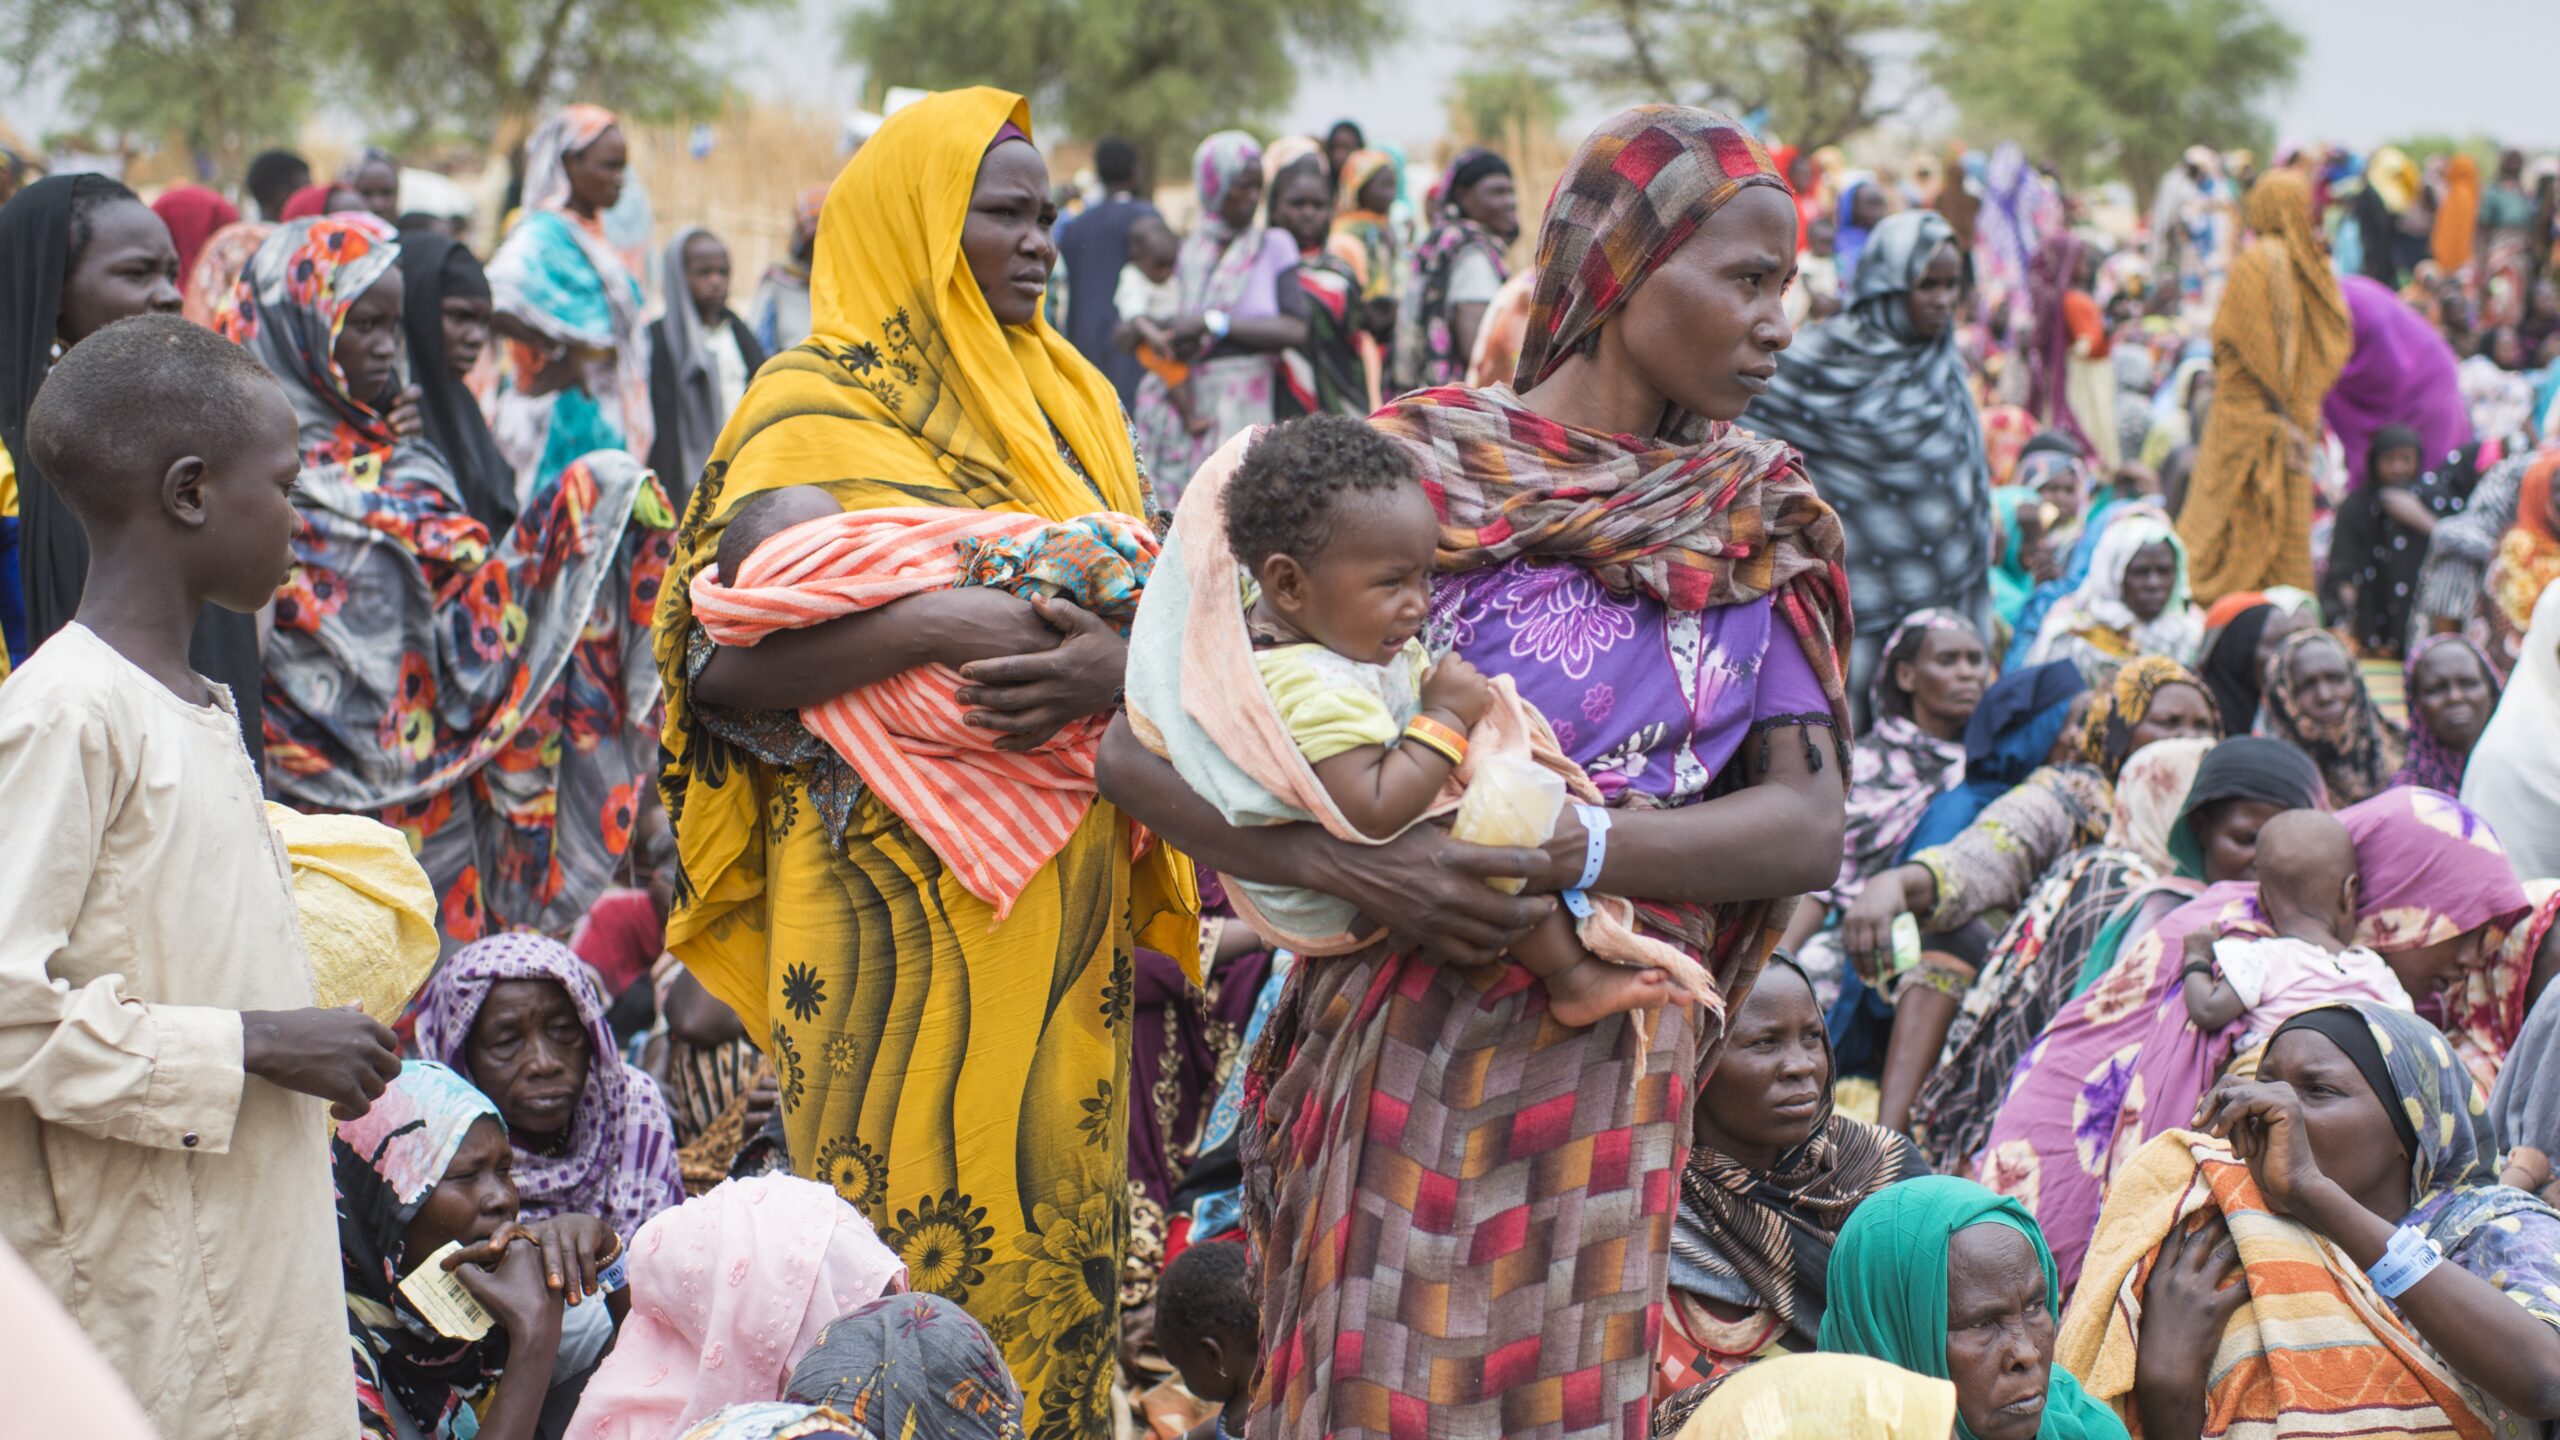 Honderden Soedanese vluchtelingen die zopas de grens met Tsjaad hebben overgestoken, verzamelen zich om hulpgoederen van UNHCR in ontvangst te nemen in Madjigilta in de regio Ouaddaï, Tsjaad. © UNHCR/Colin Delfosse